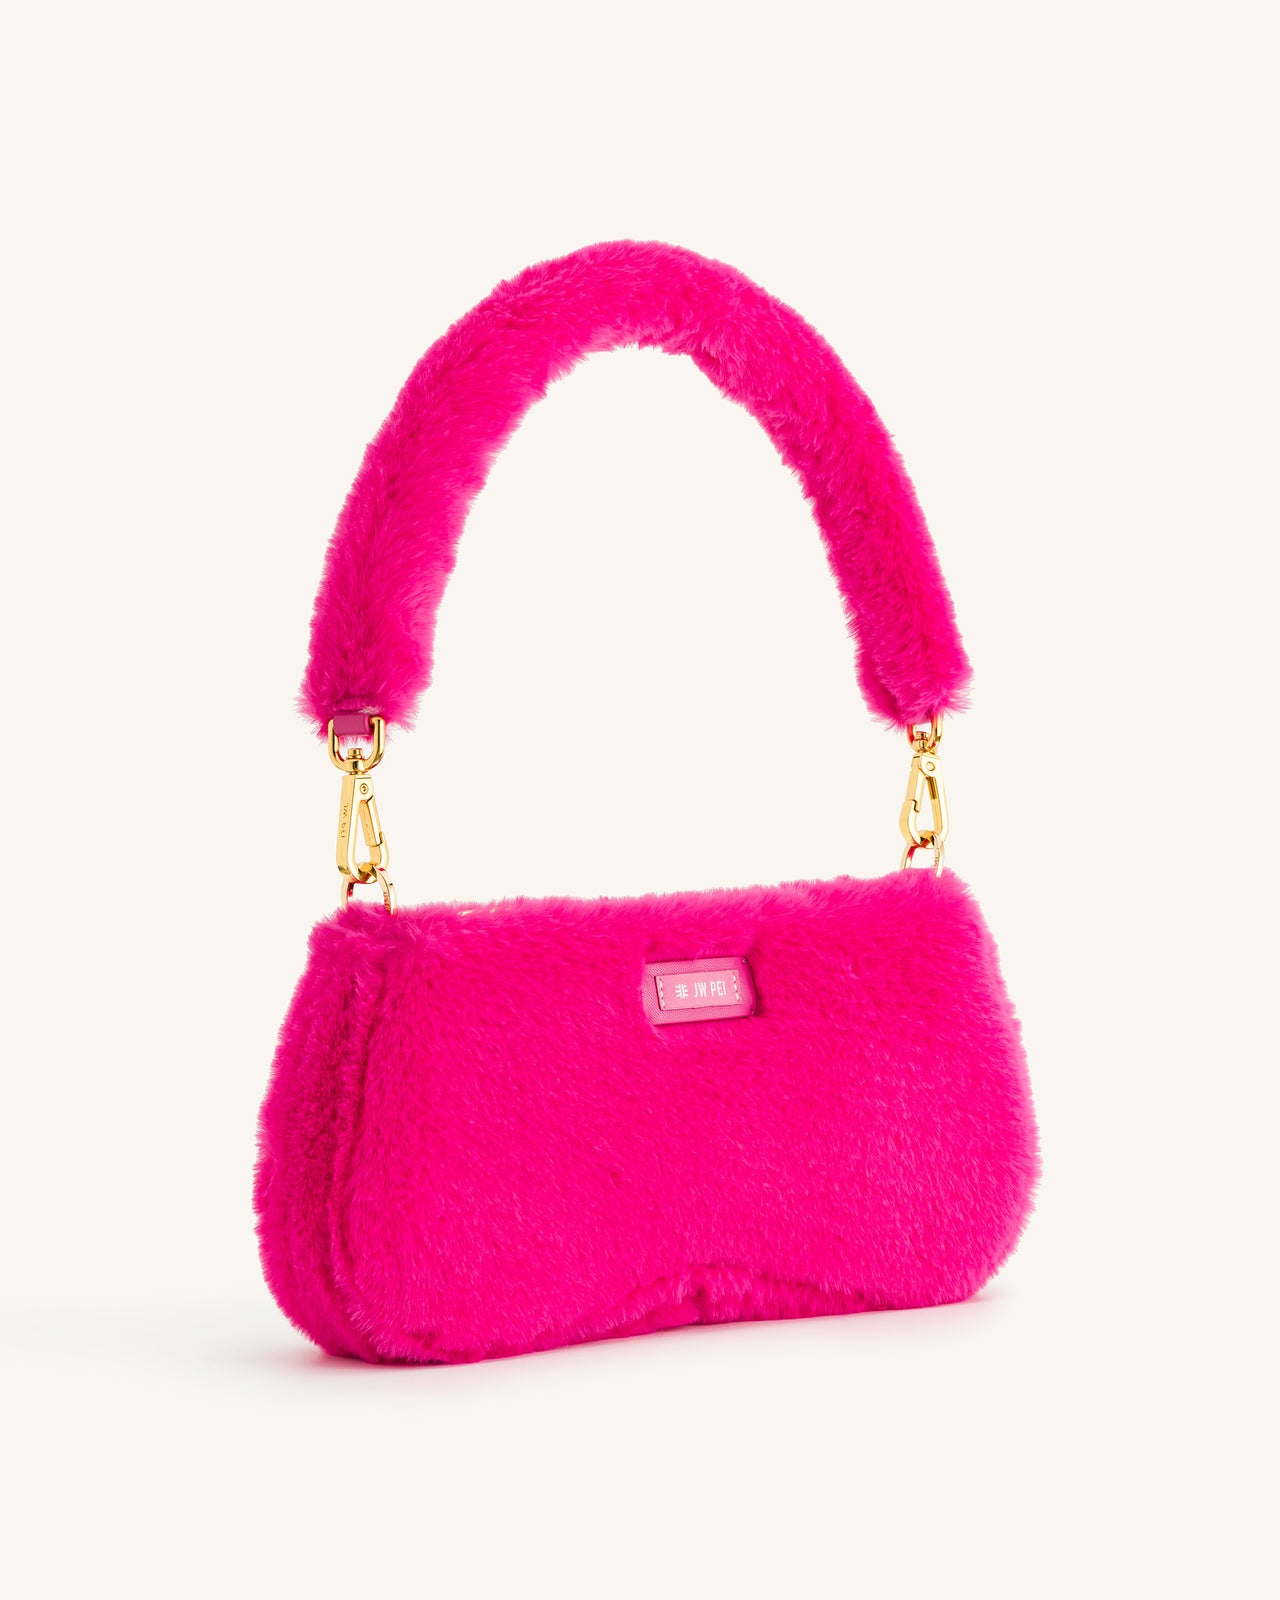 .com JW PEI Women's Eva Shoulder Handbag 58.99